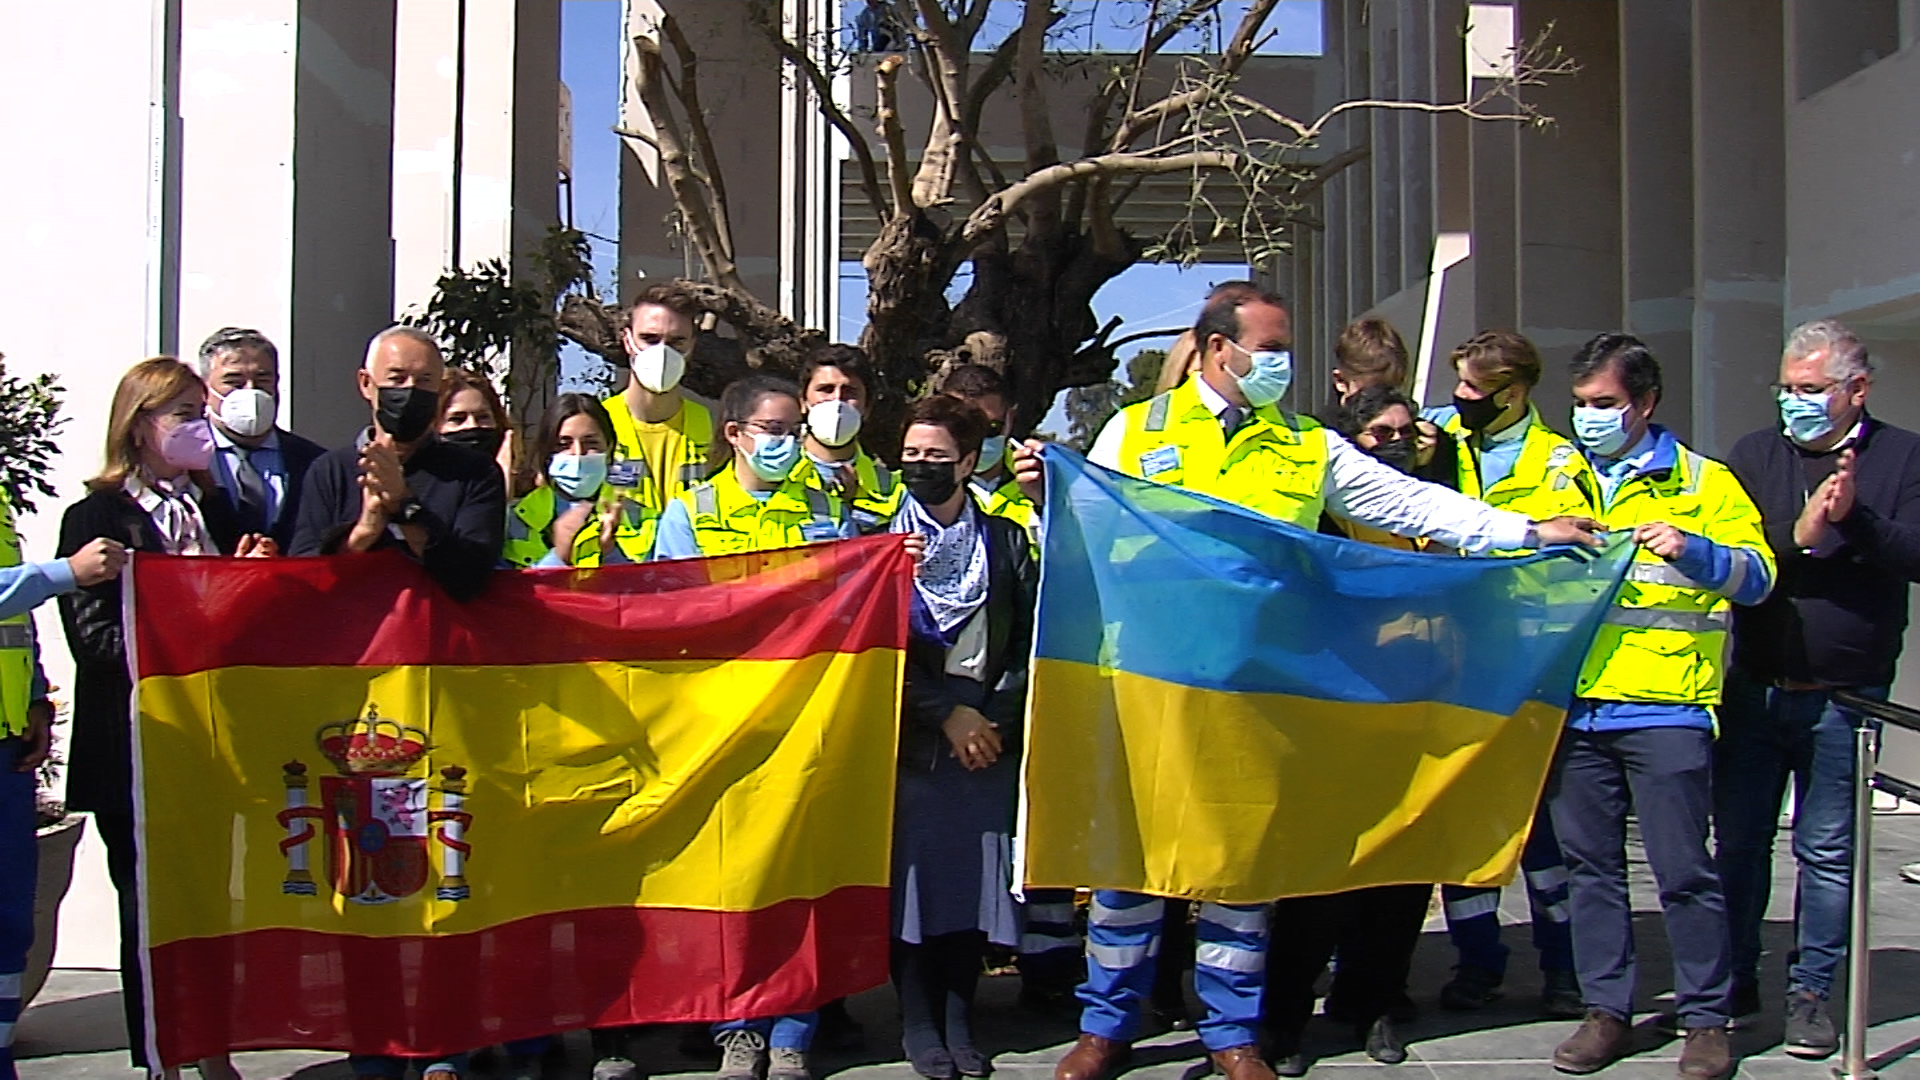 Voluntarios en España: “Hoy es Ucrania, mañana puede ser aquí”